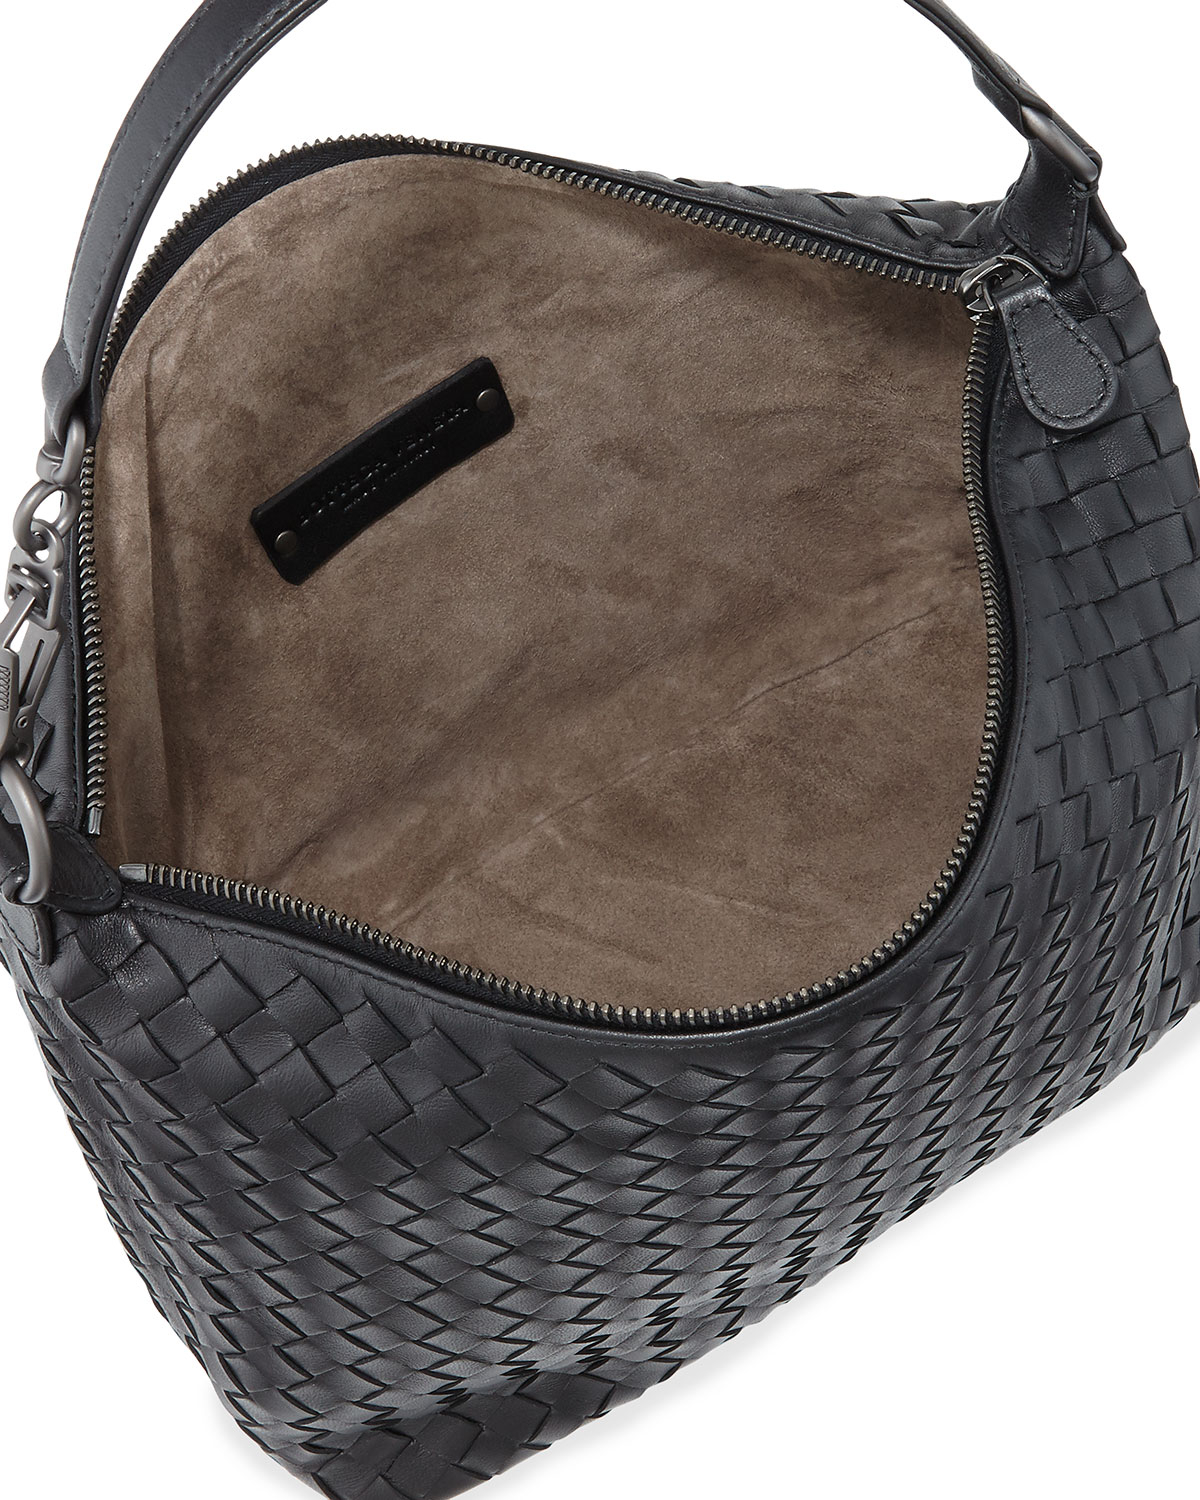 Lyst - Bottega Veneta Small Zip Hobo Bag in Black